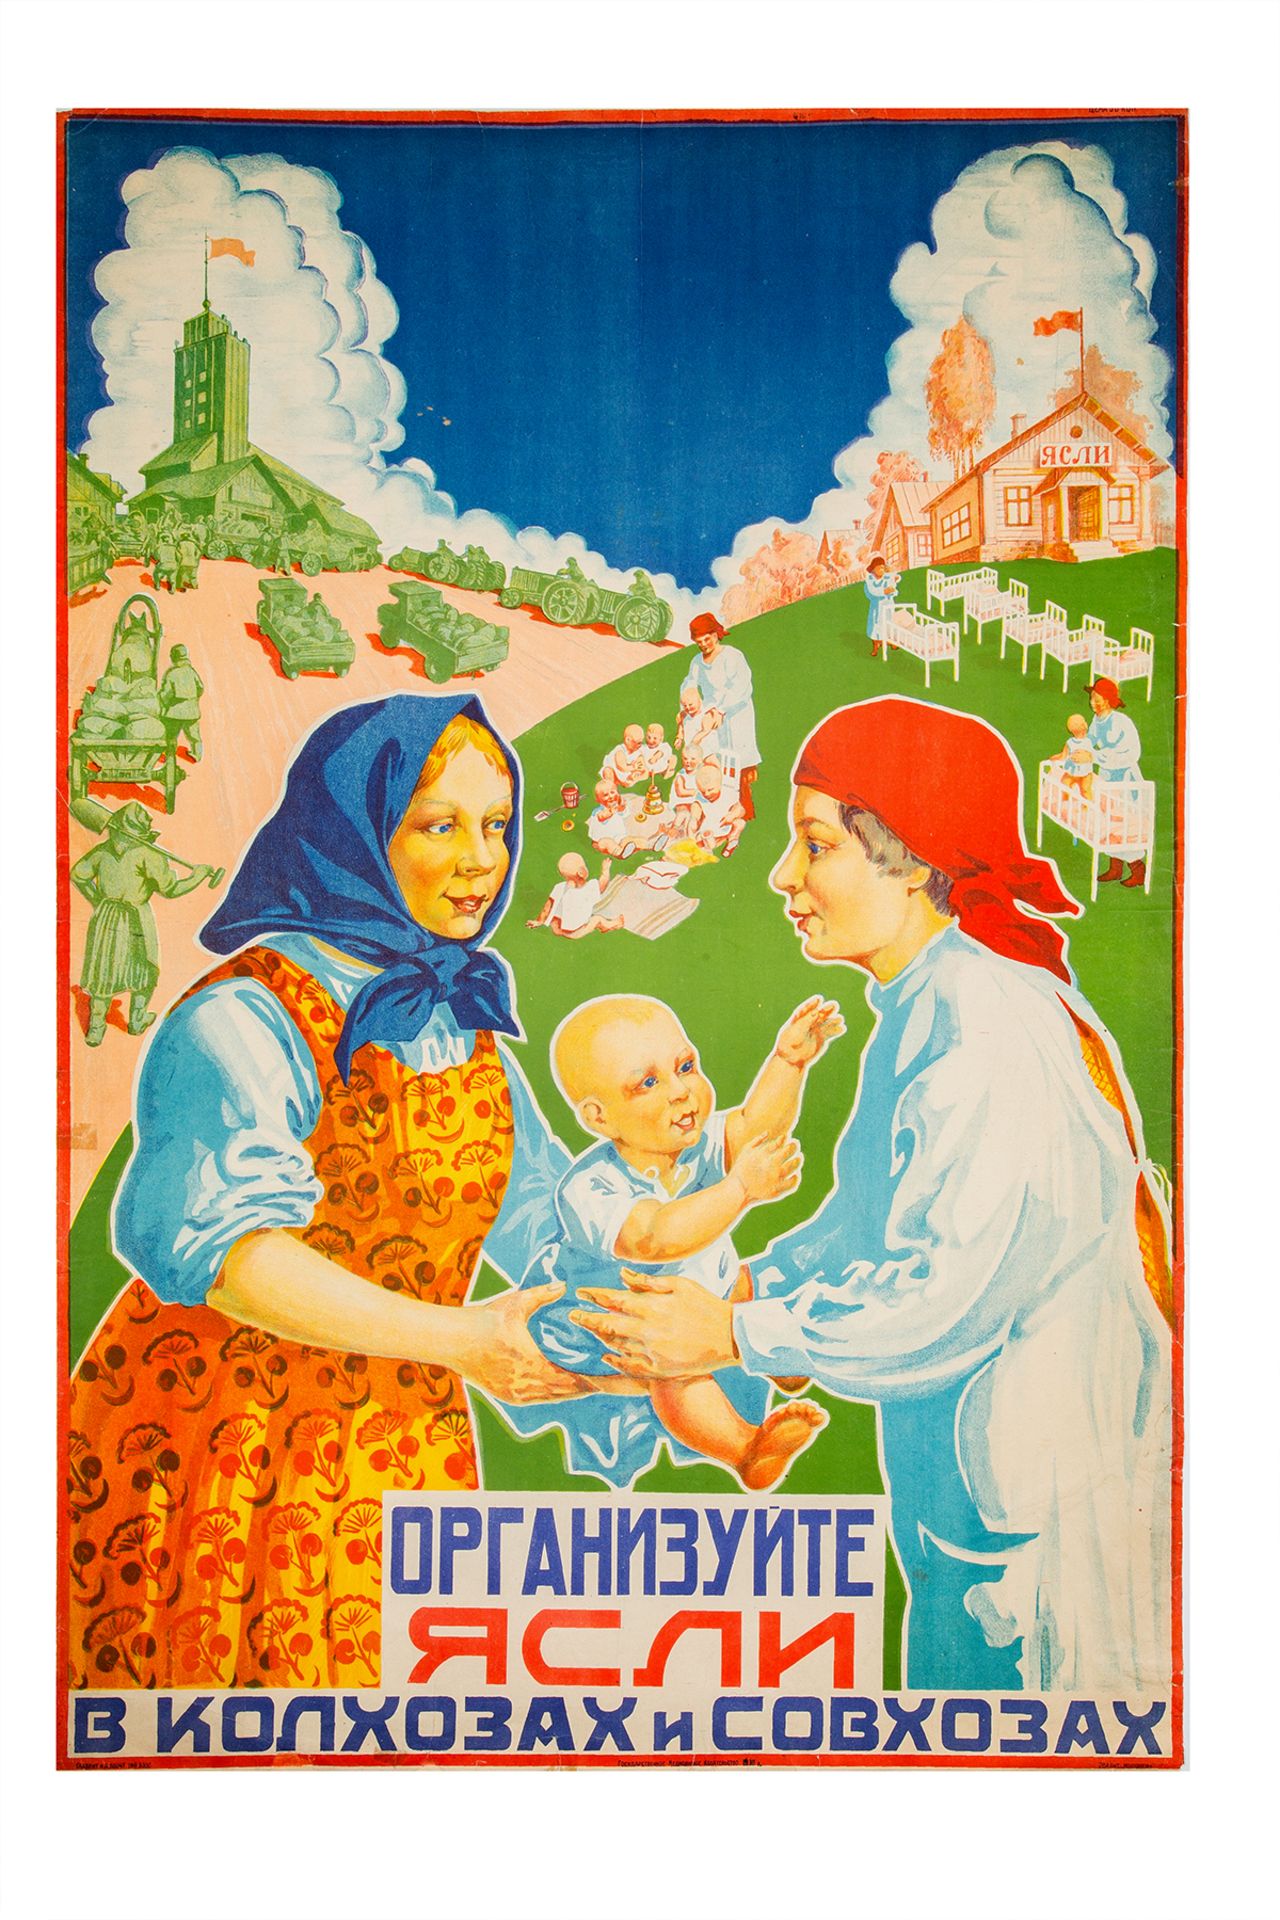 [Soviet] Poster â€œOrganize nursery in kolkhozes and sovkhozesâ€. â€“ Moscow, 1930.; 102,2x96,5 cm. - Image 2 of 2